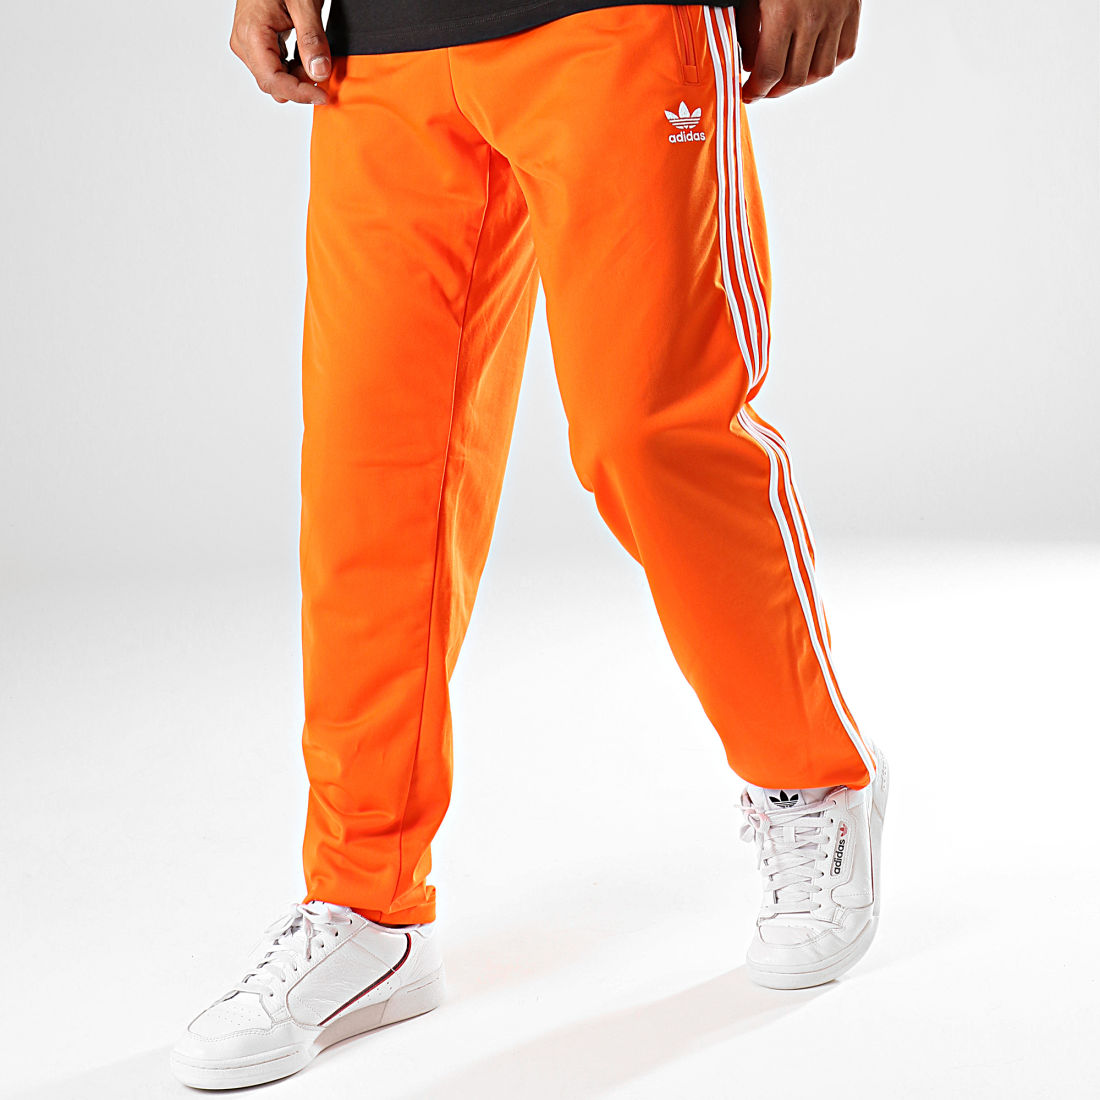 adidas - Pantalon Jogging A Bandes Firebird ED7015 Orange Fluo 